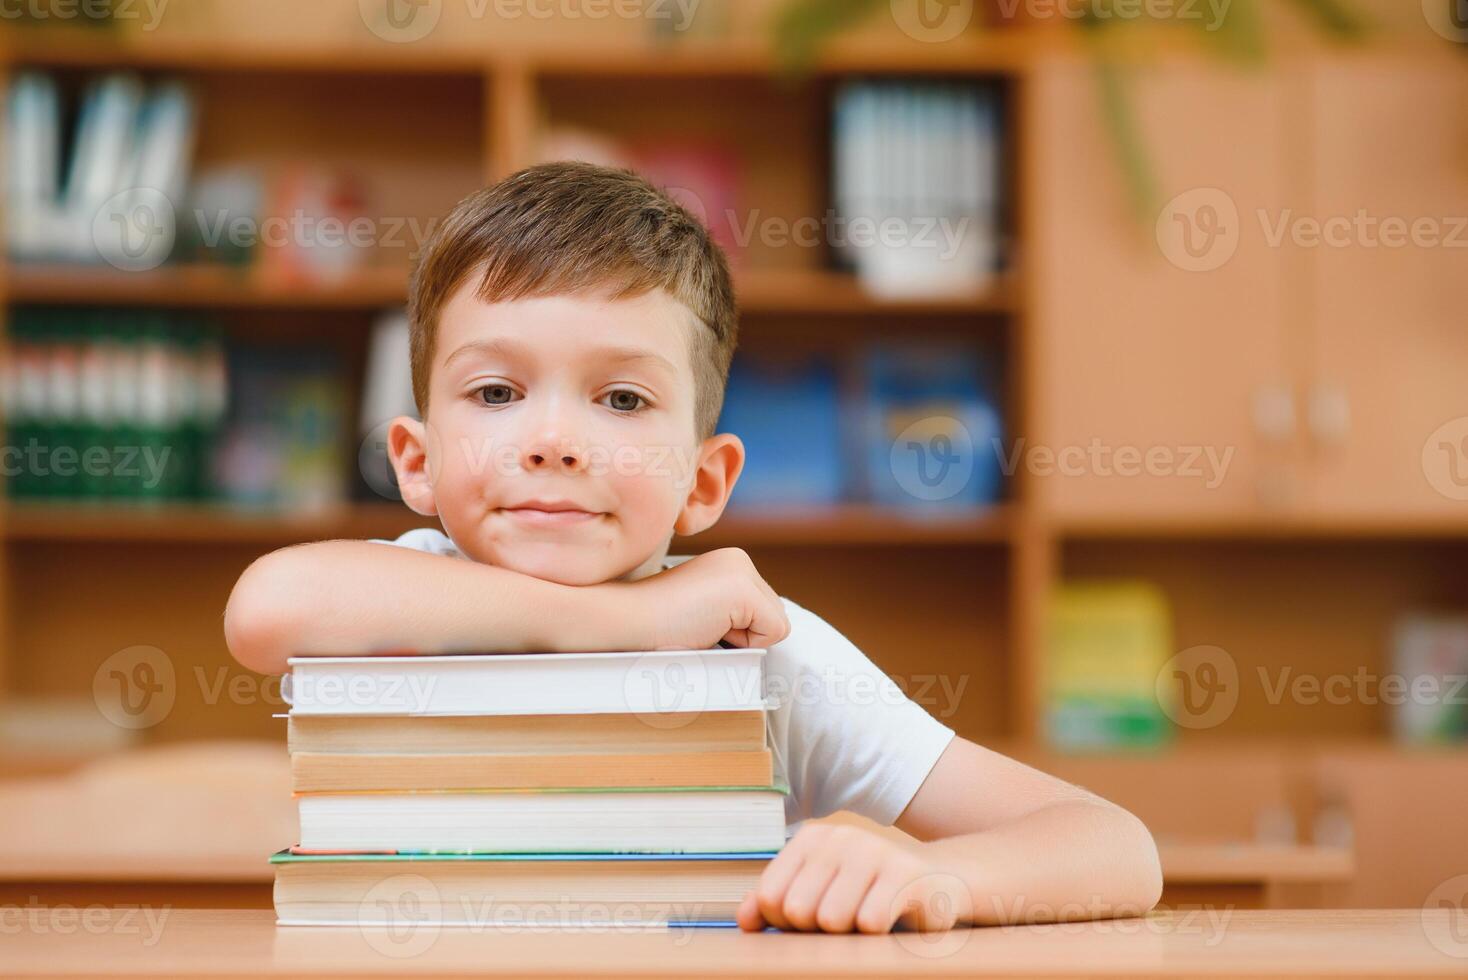 éducation et école concept - souriant peu garçon avec beaucoup livres à école photo